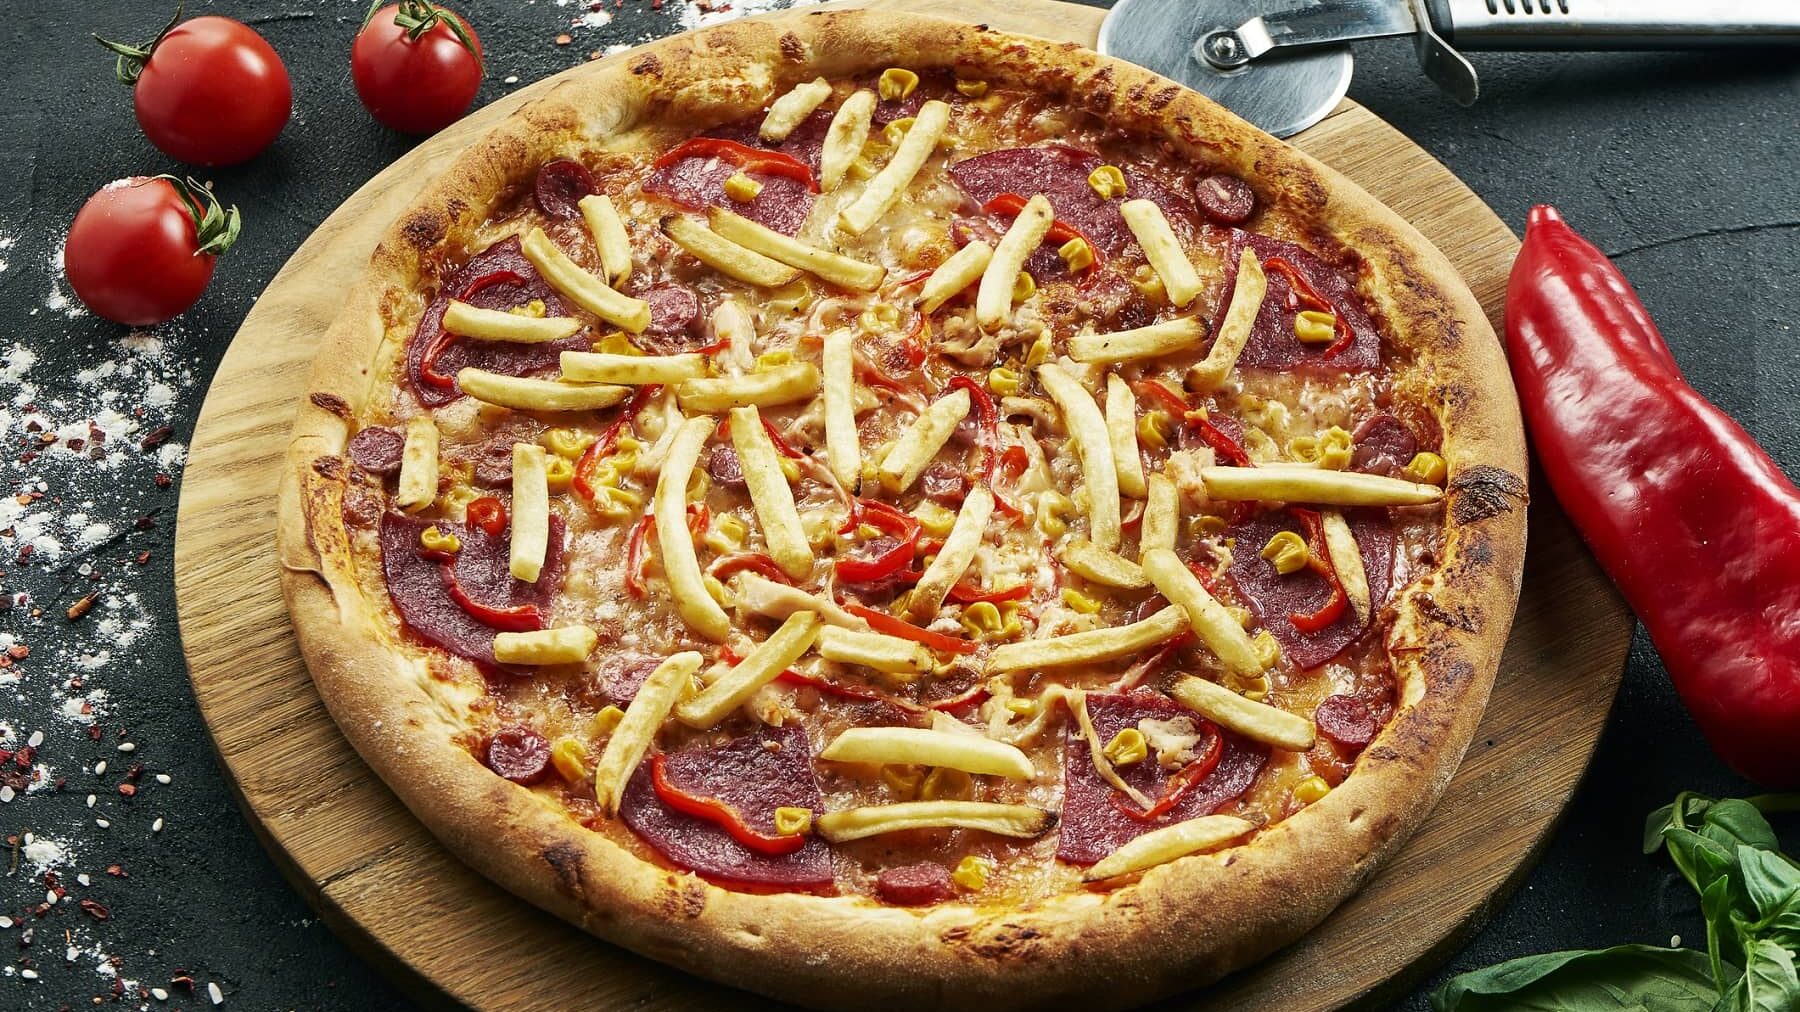 Eine Pommes-Pizza mit Salami-Paprika und Mais auf einem runden Holzbrett auf einem Steintisch. Um die Pizza herum liegen Paprika, Tomaten, ein Pizzaroller und Basilikum.